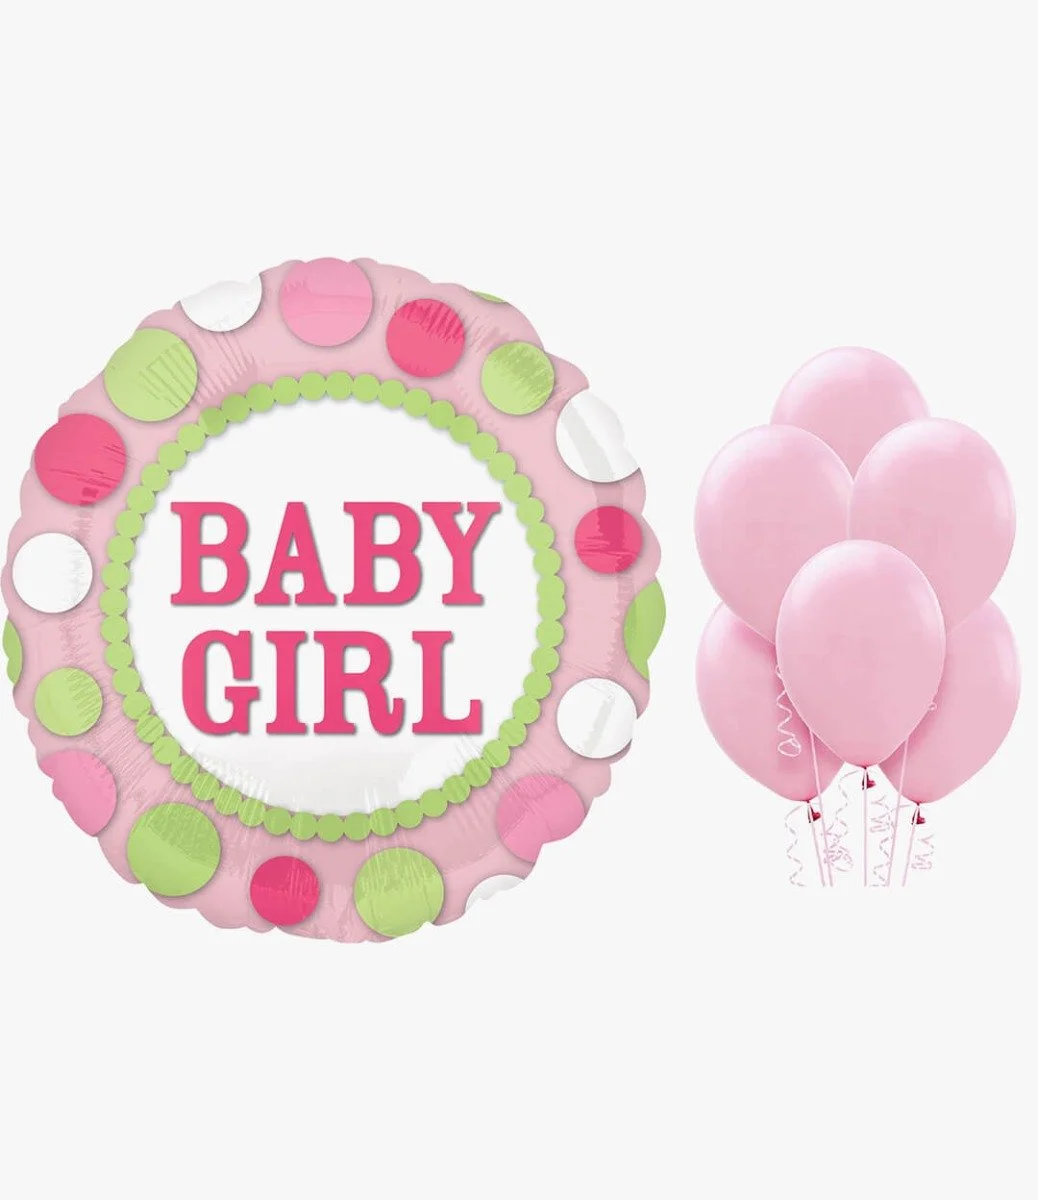 Baby Girl Rounded Balloon Bundle